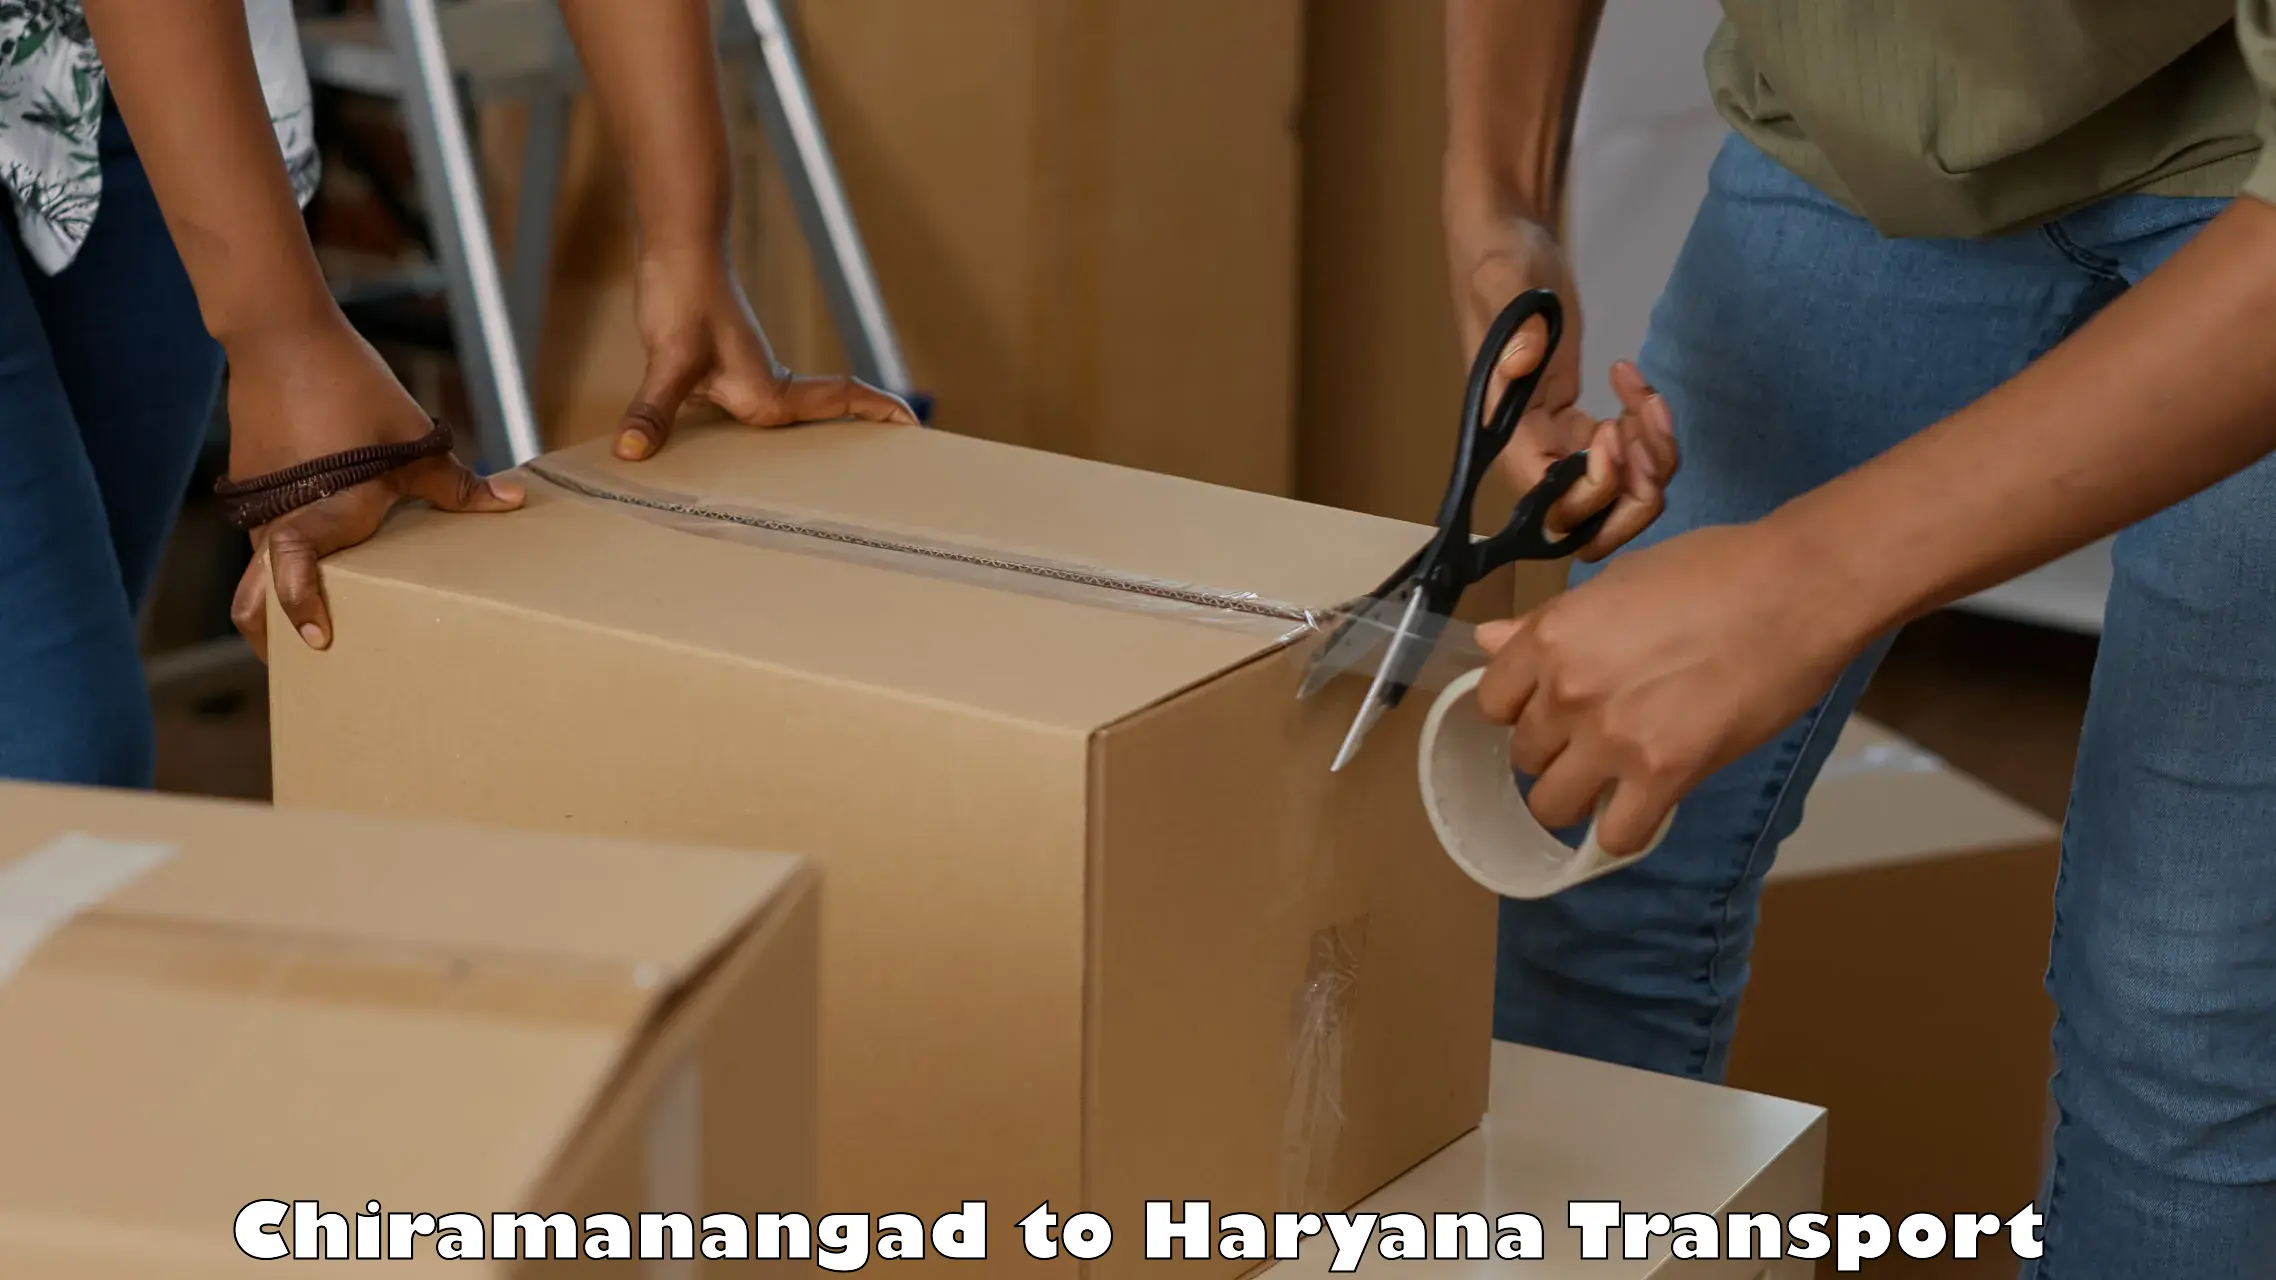 Bike shipping service Chiramanangad to Panipat